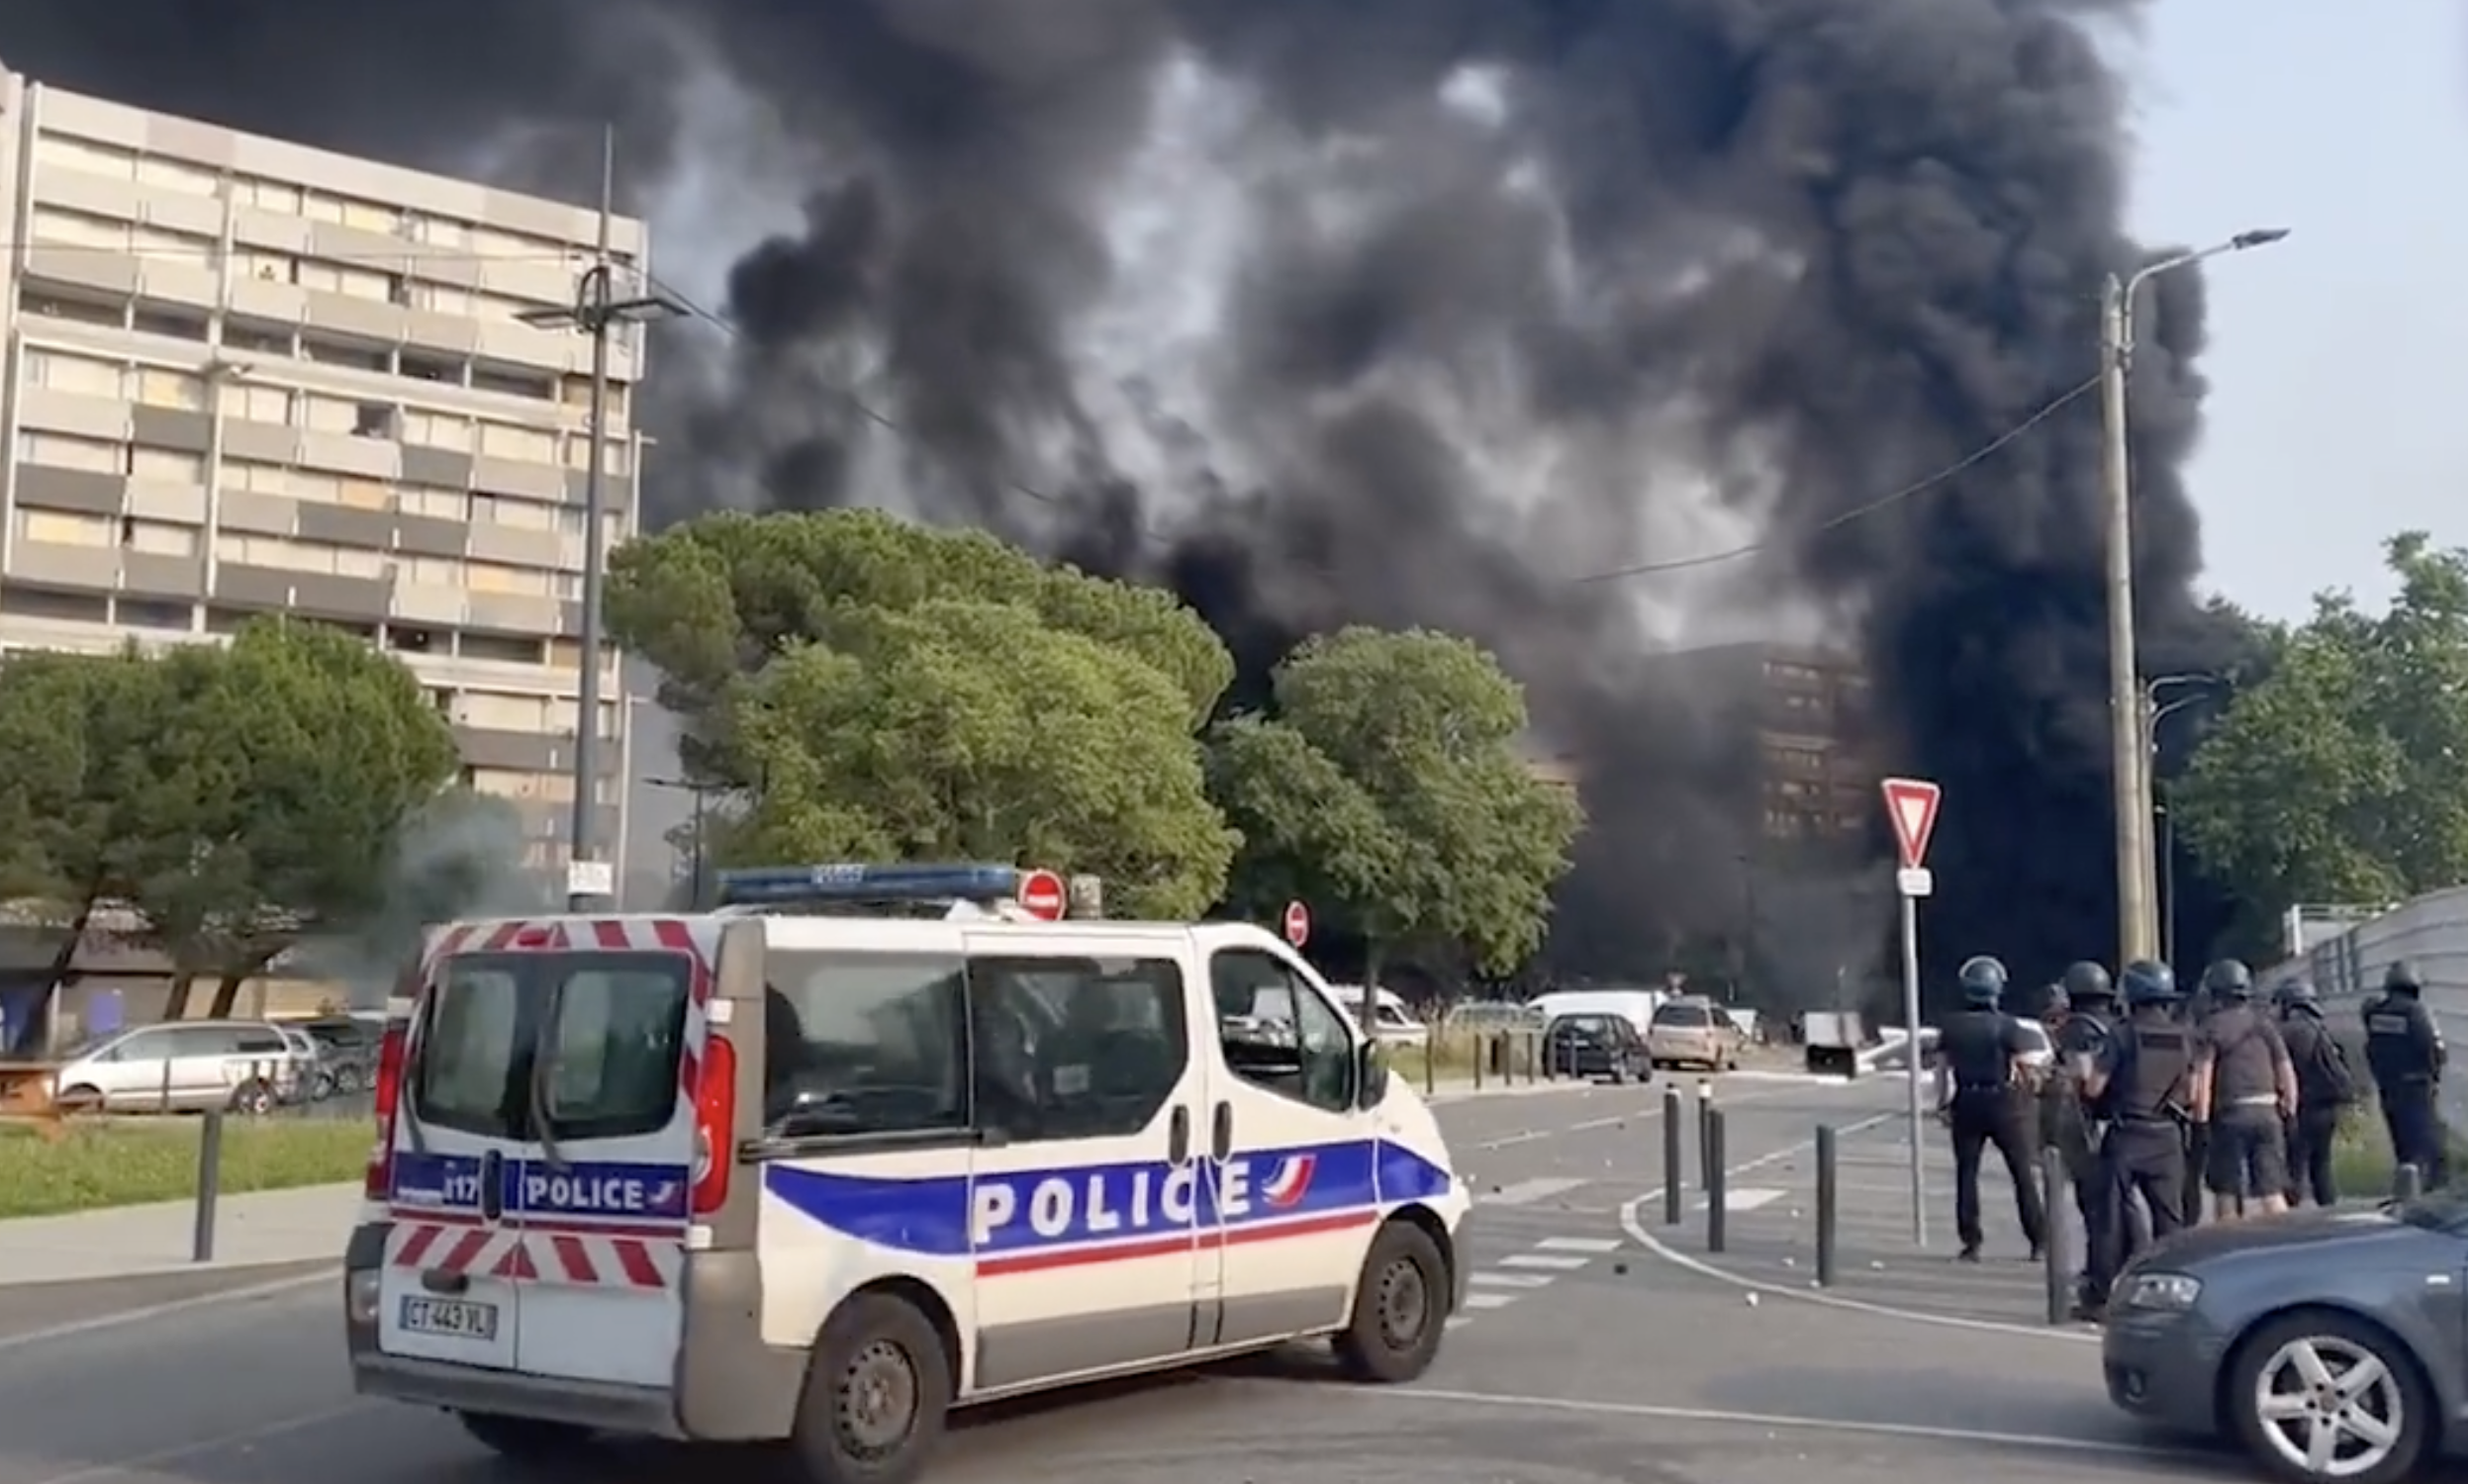     Emeutes après la mort de Nahel : plusieurs villes de France sous couvre-feu

